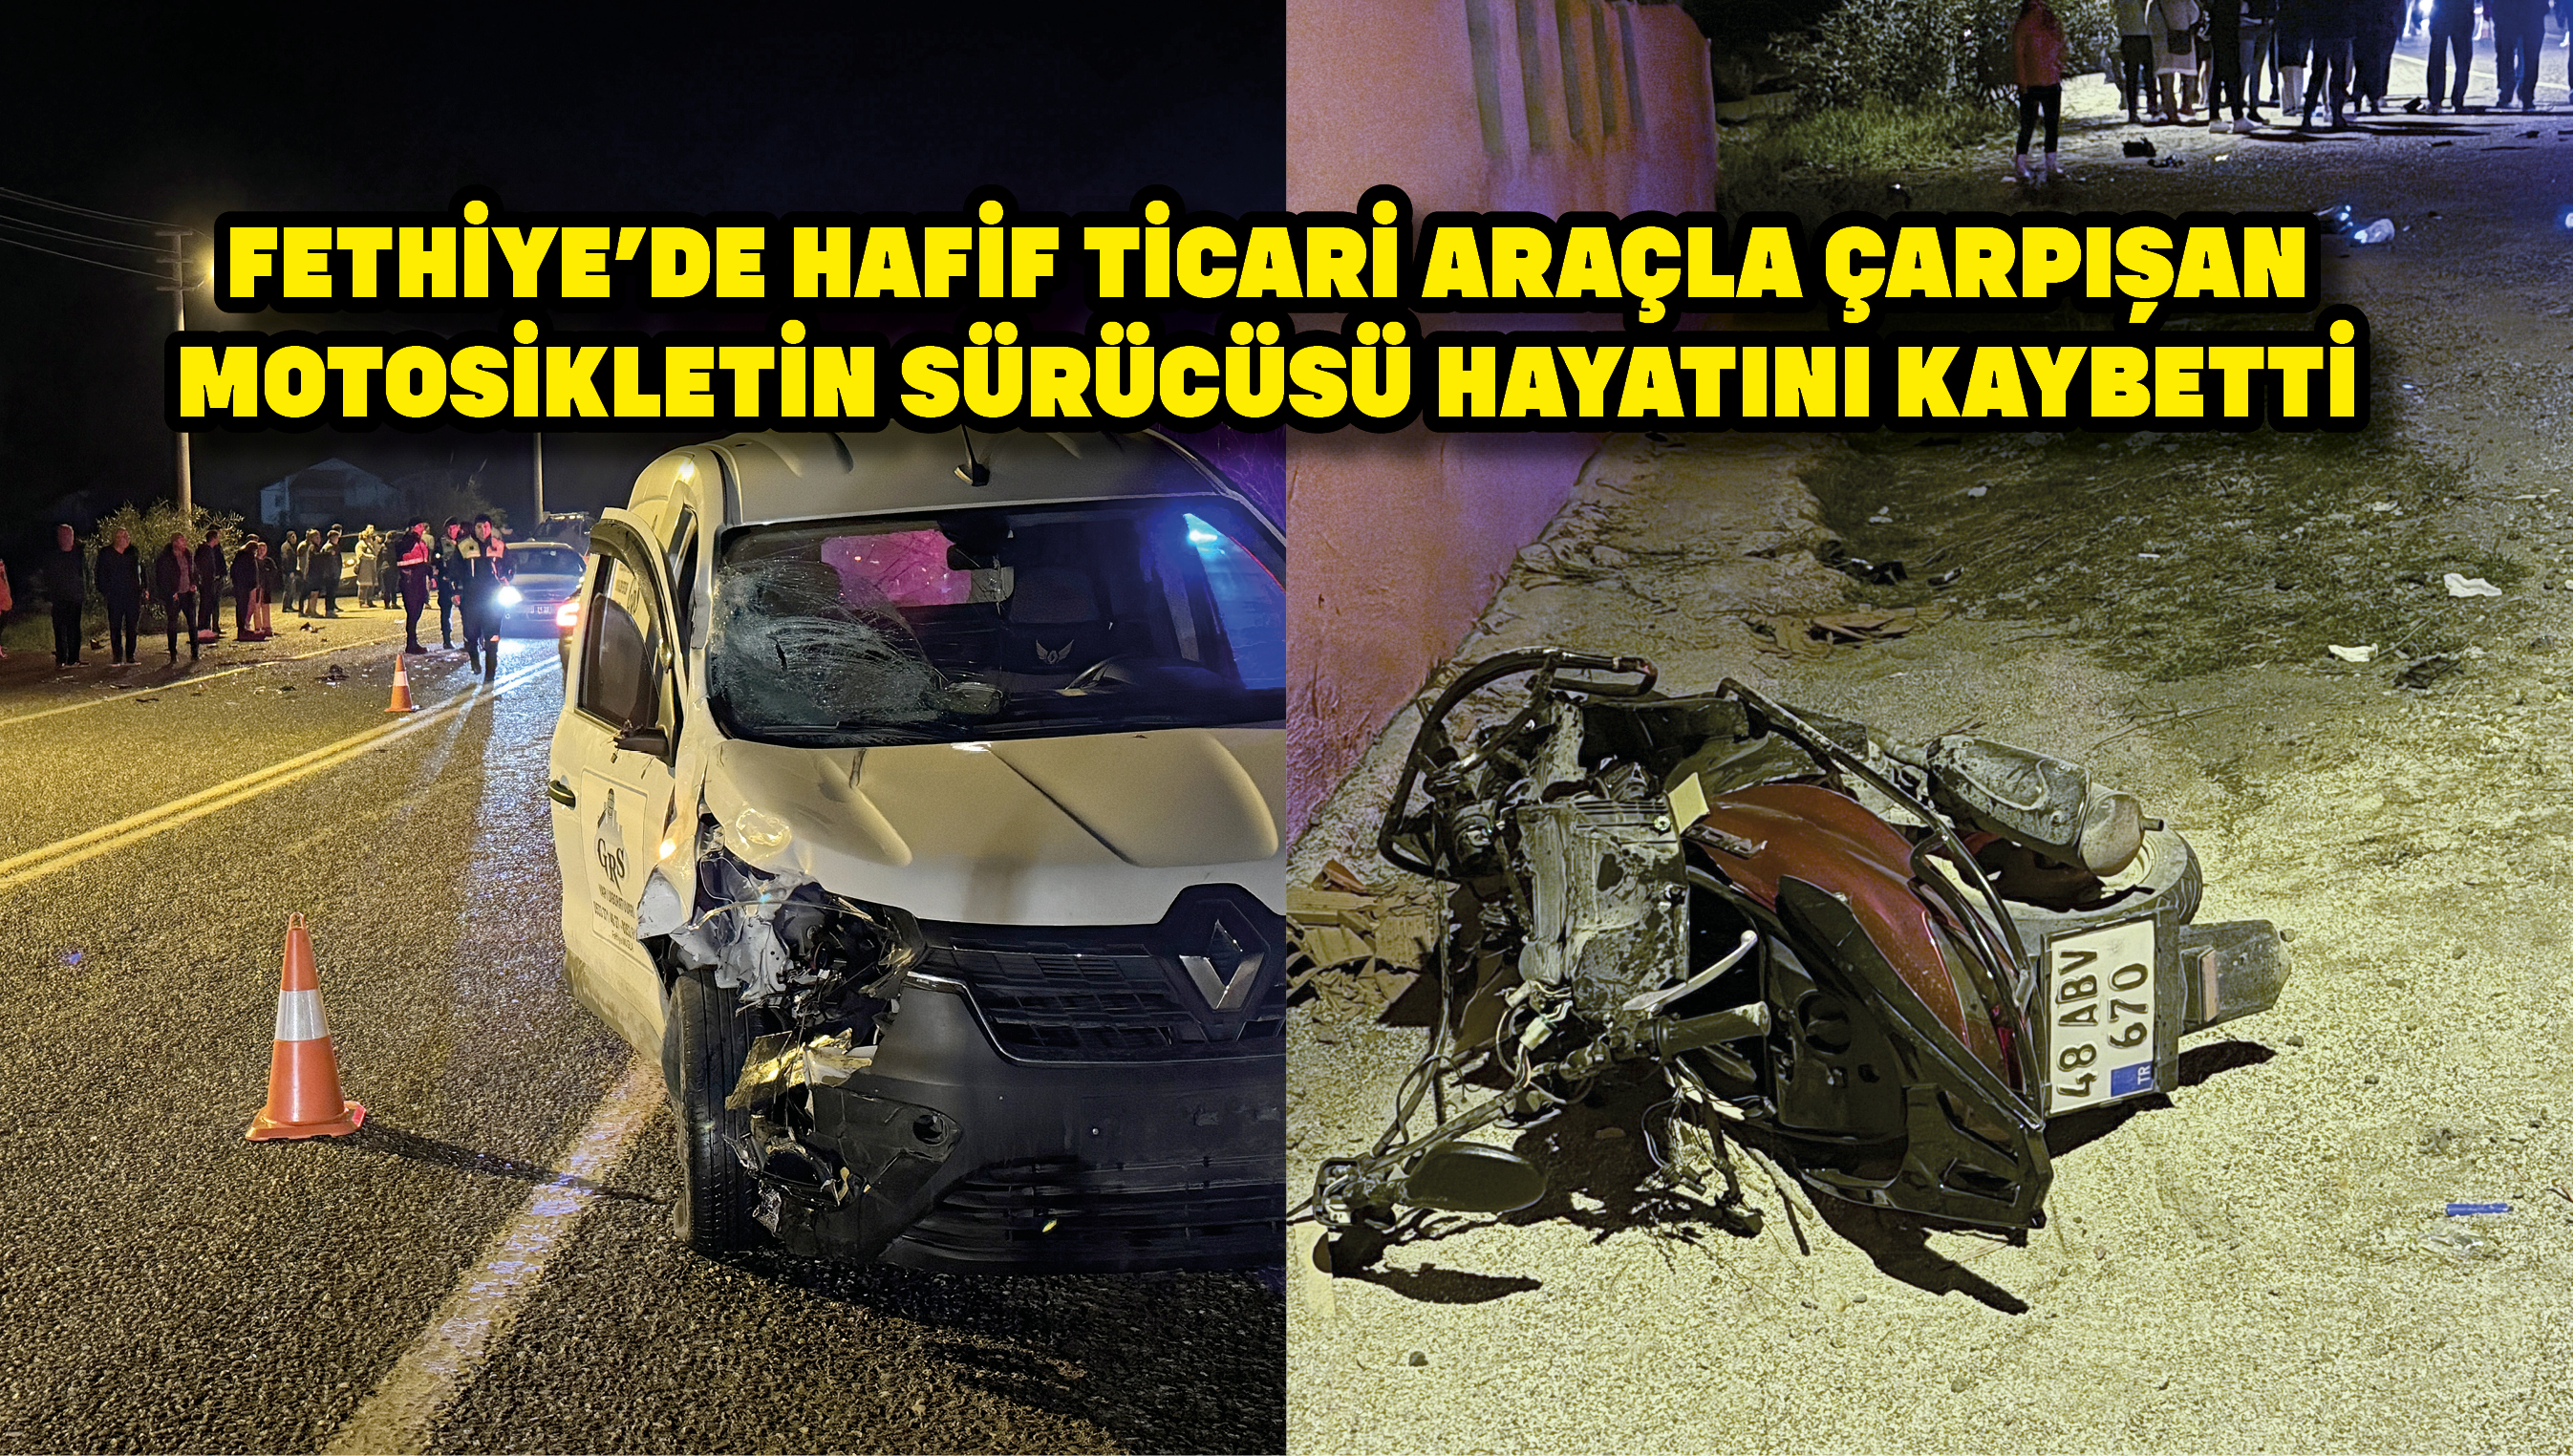 Fethiye'de hafif ticari araçla çarpışan motosikletin sürücüsü hayatını kaybetti